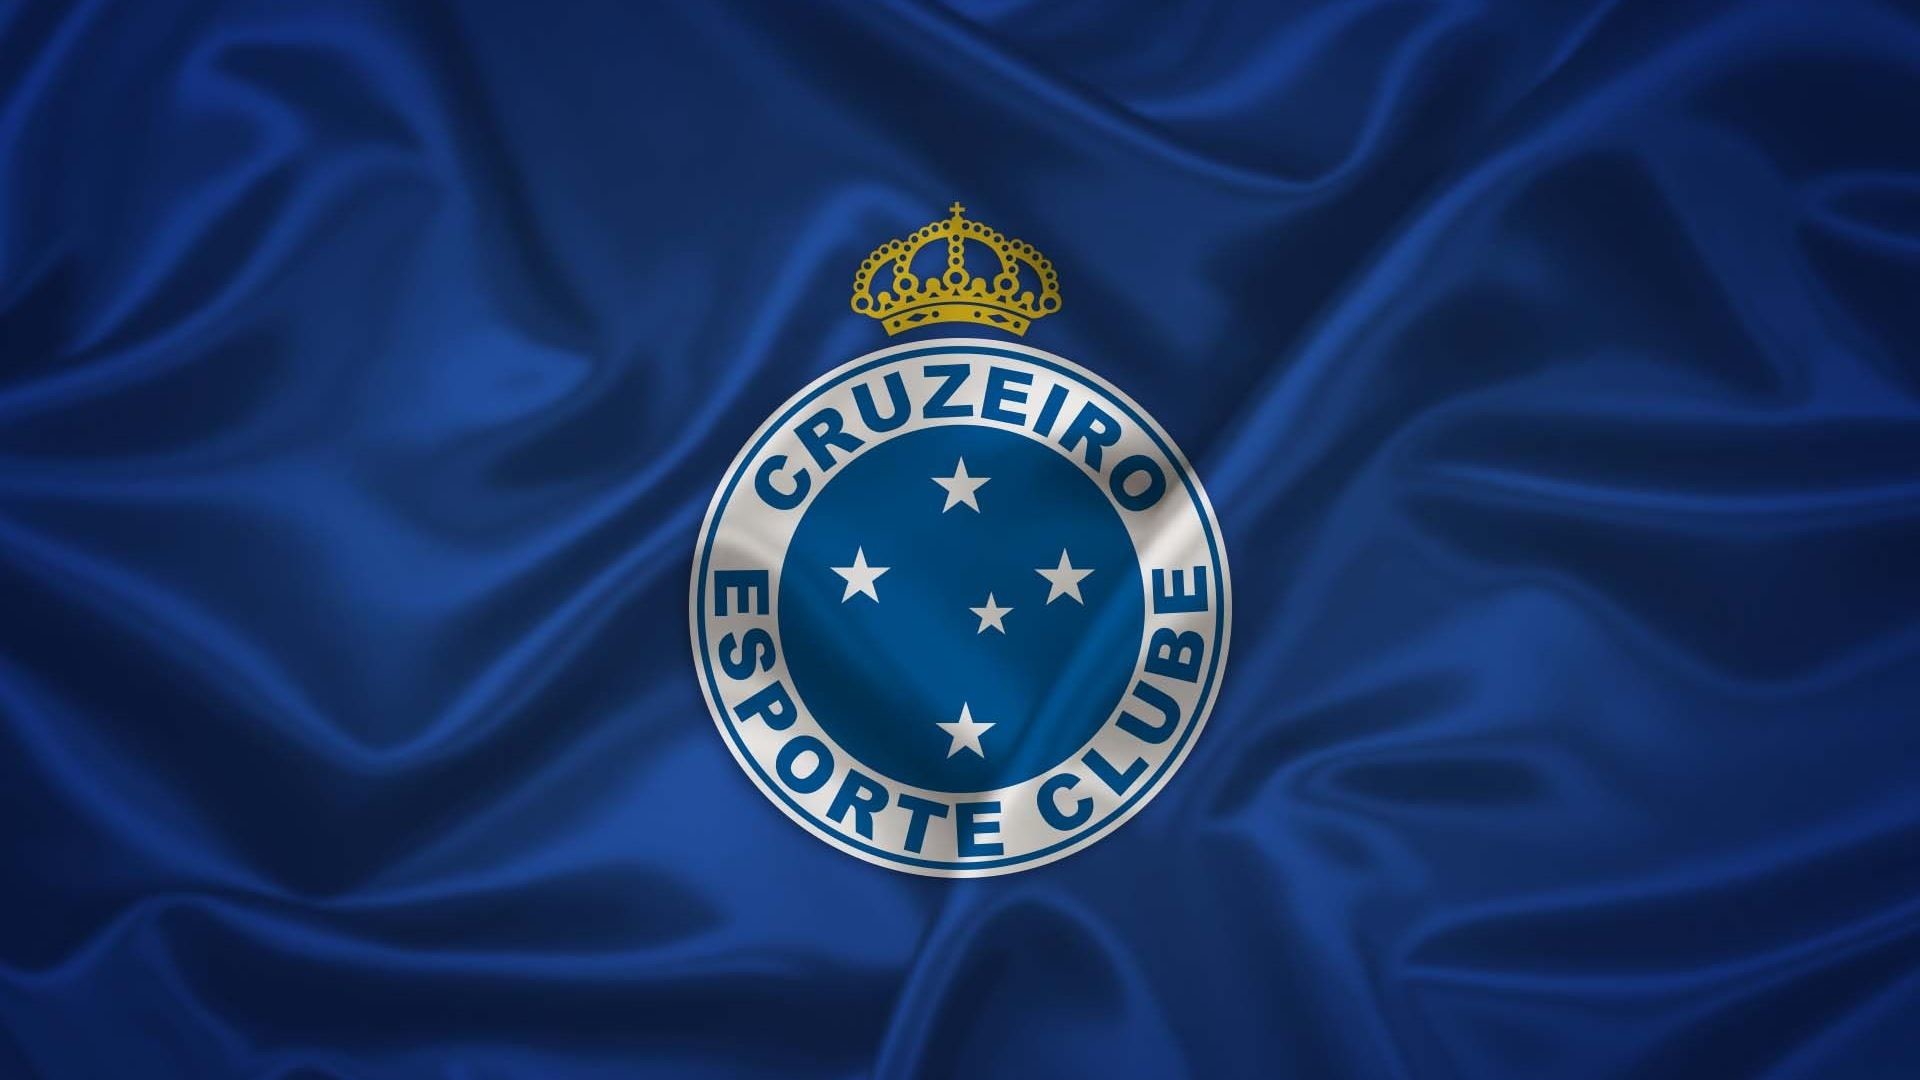 1920x1080 Cruzeiro Esporte Clube Football League Logo Wallpaper